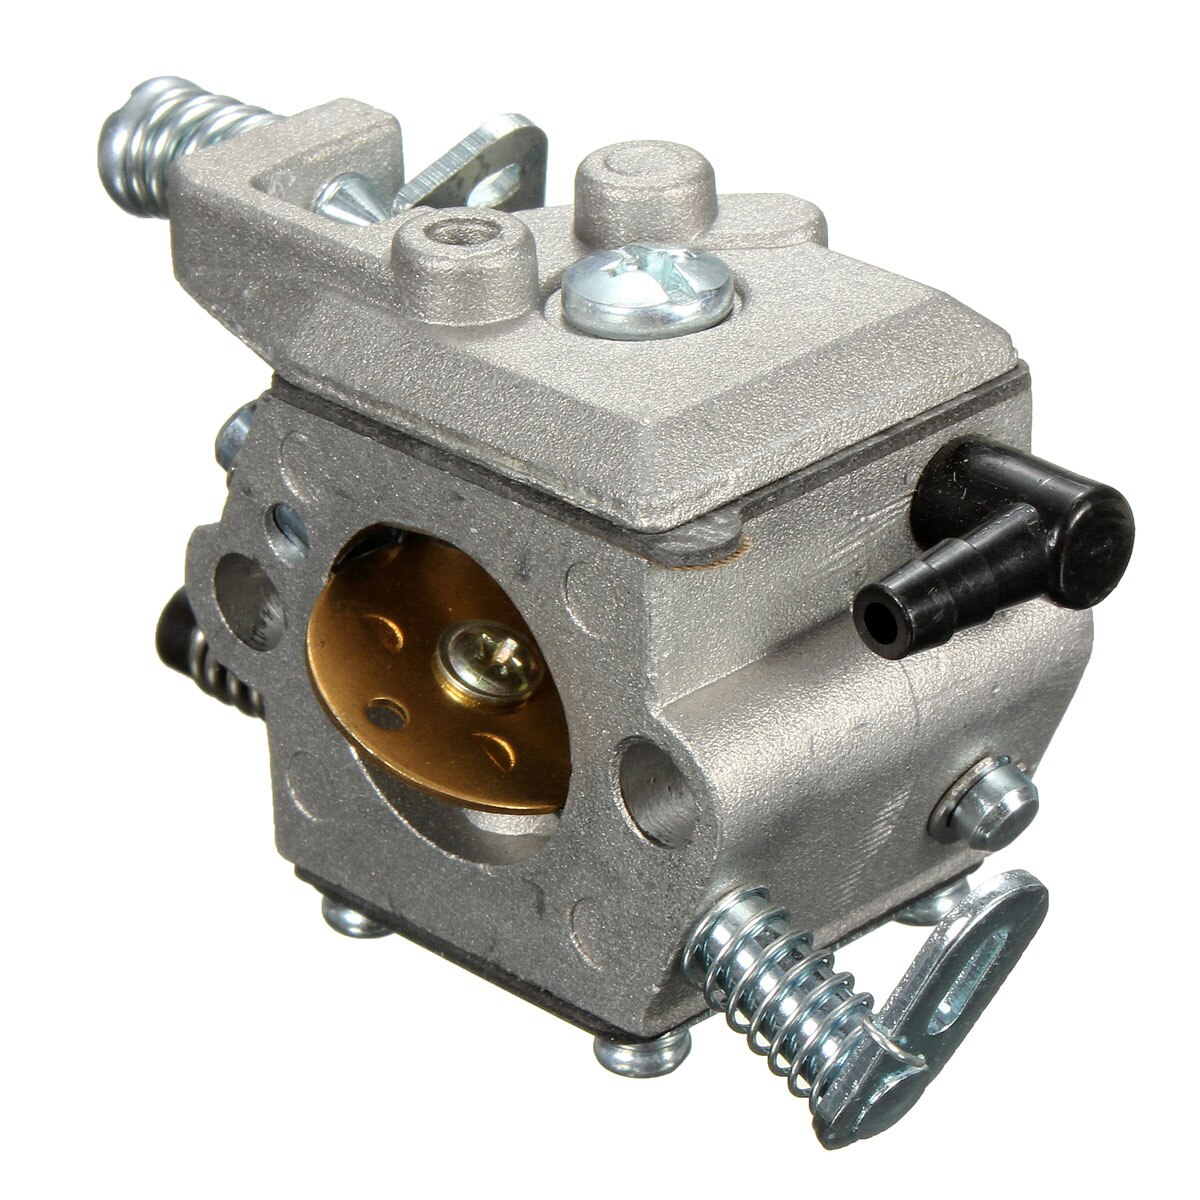 Metal motorsav karburator til stihl 023 025 ms230 ms250